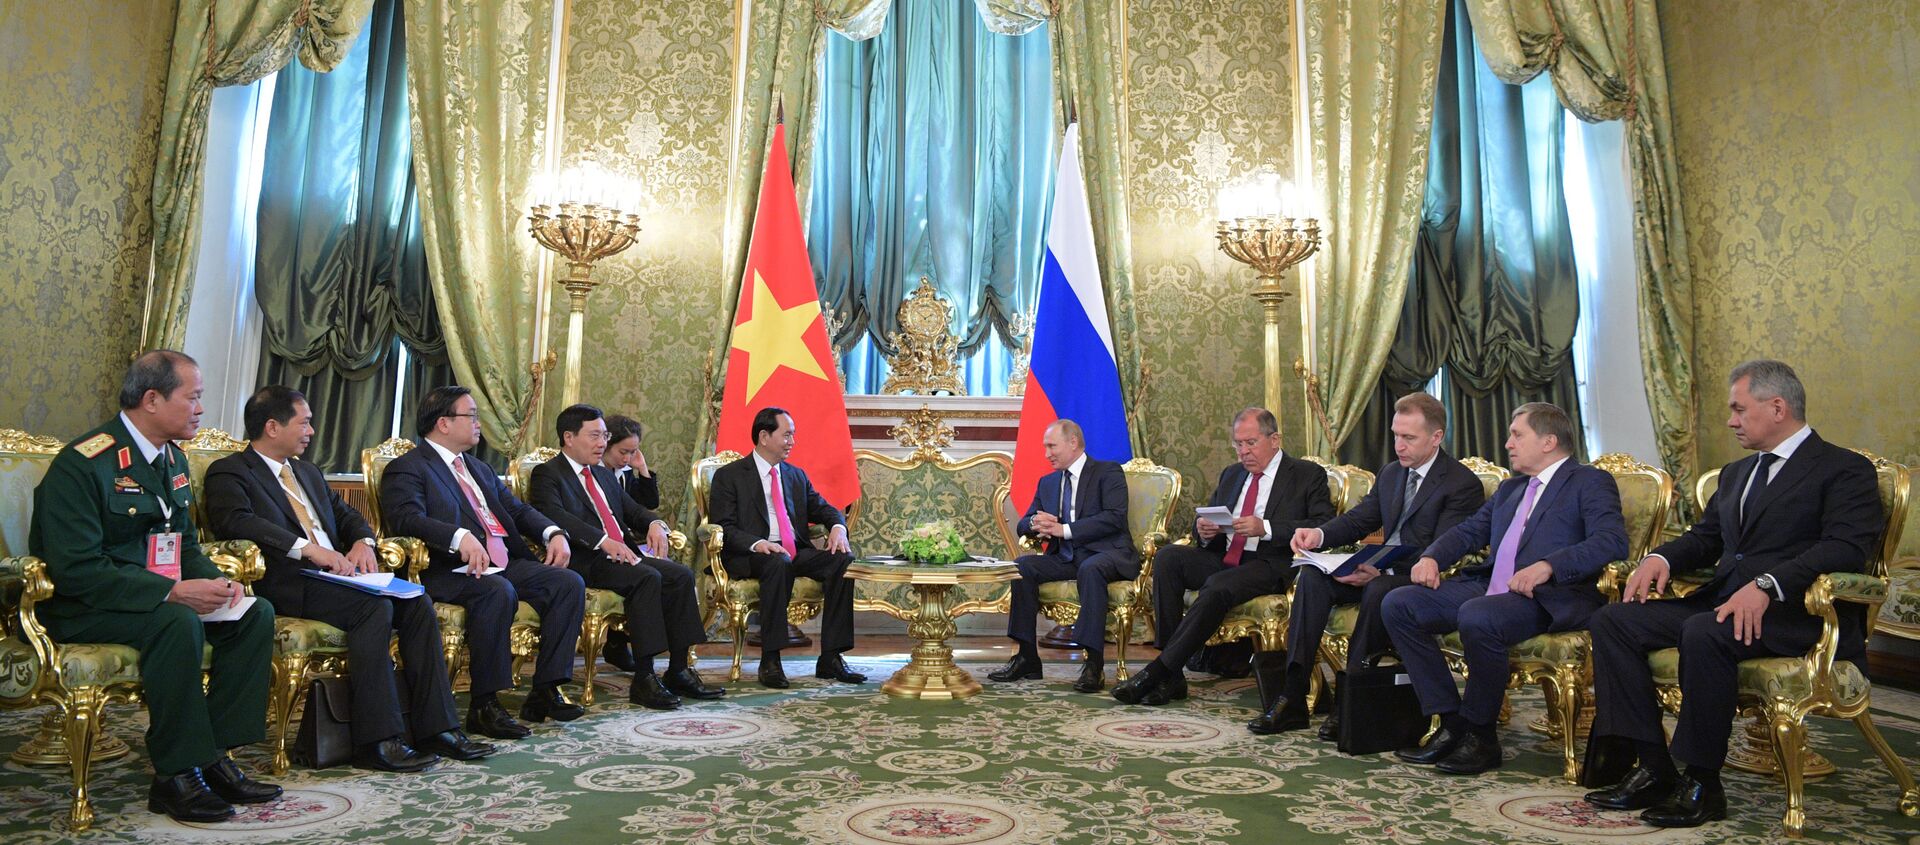 Cuộc hội đàm giữa hai nhà lãnh đạo Vladimir Putin và Trần Đại Quang trong điện Kremlin - Sputnik Việt Nam, 1920, 29.06.2017